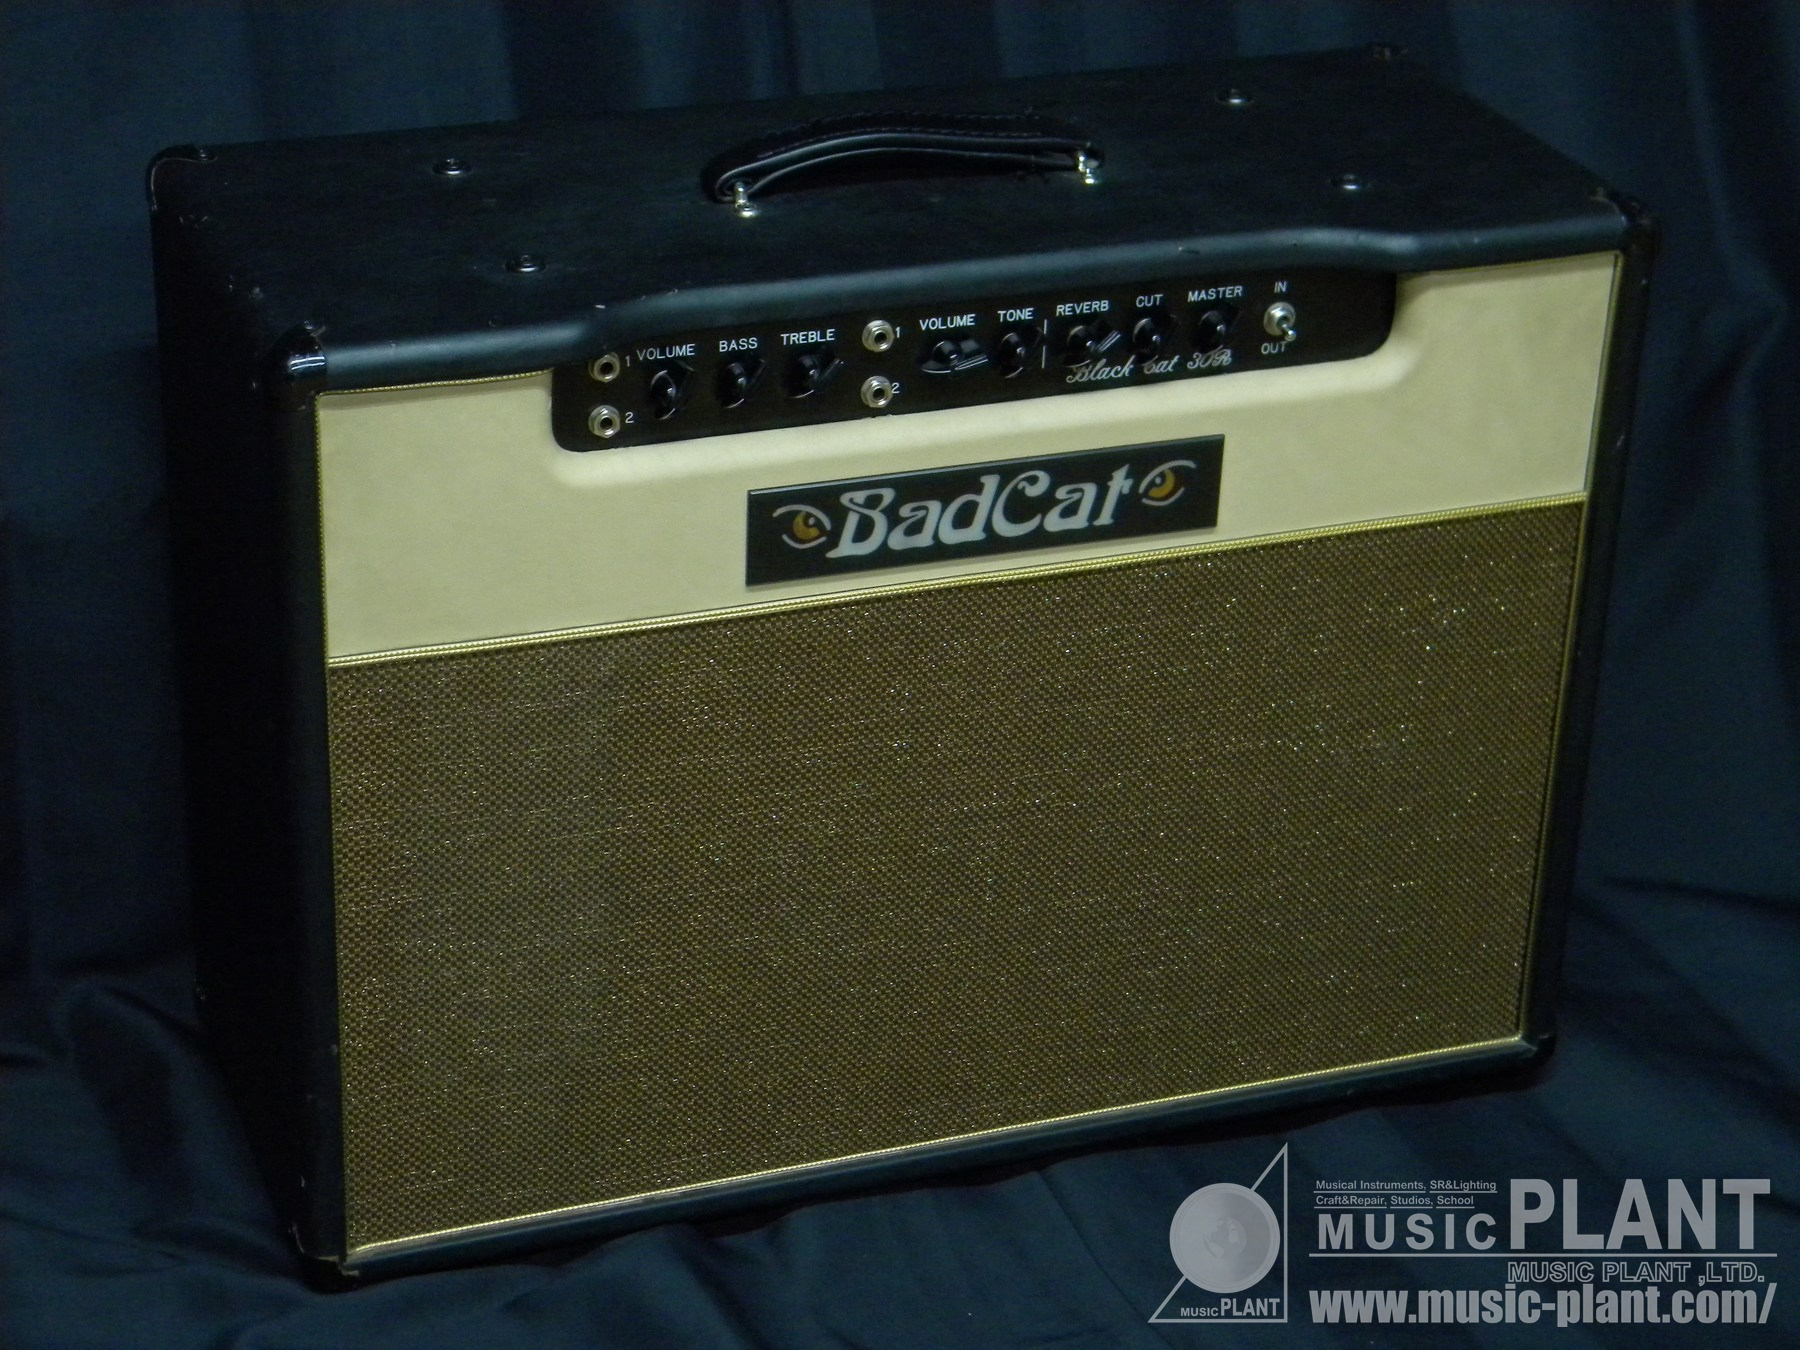 Bad Cat ギター・アンプコンボBlack Cat 30R 212中古品()売却済みです。あしからずご了承ください。 MUSIC PLANT  WEBSHOP